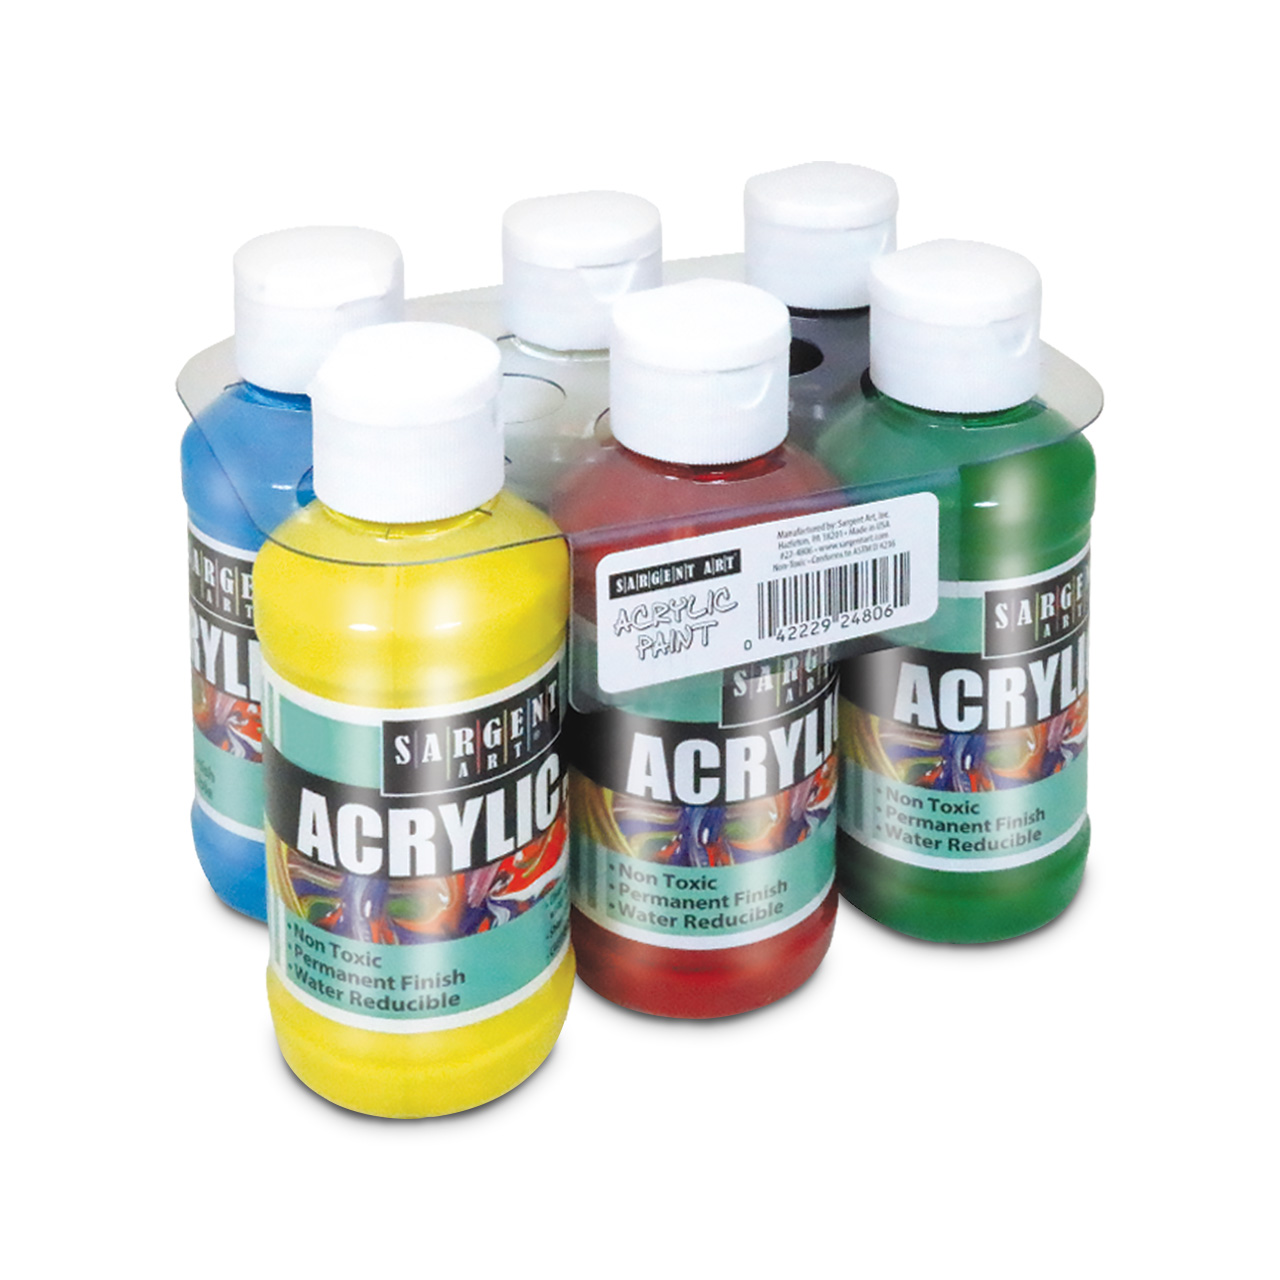 Sargent Art Acrylic Paint, Assorted - 6 pack, 4 fl oz bottles